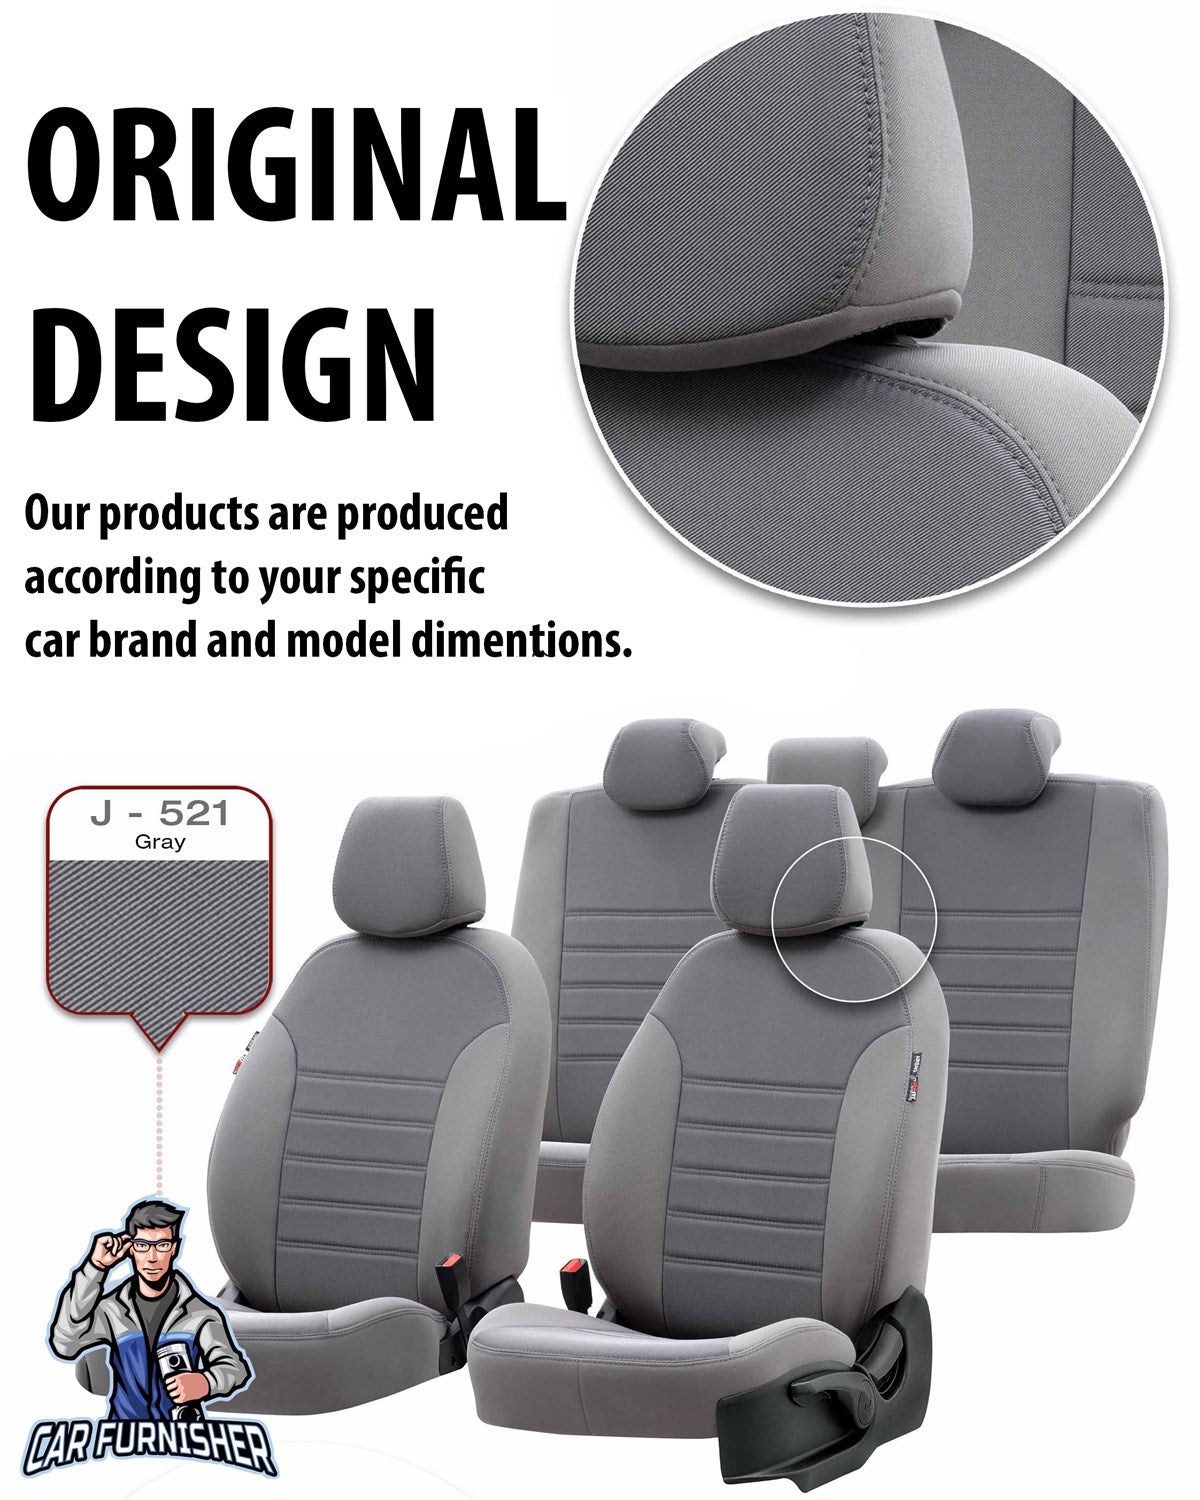 Chevrolet Captiva Seat Cover Original Jacquard Design Red Jacquard Fabric